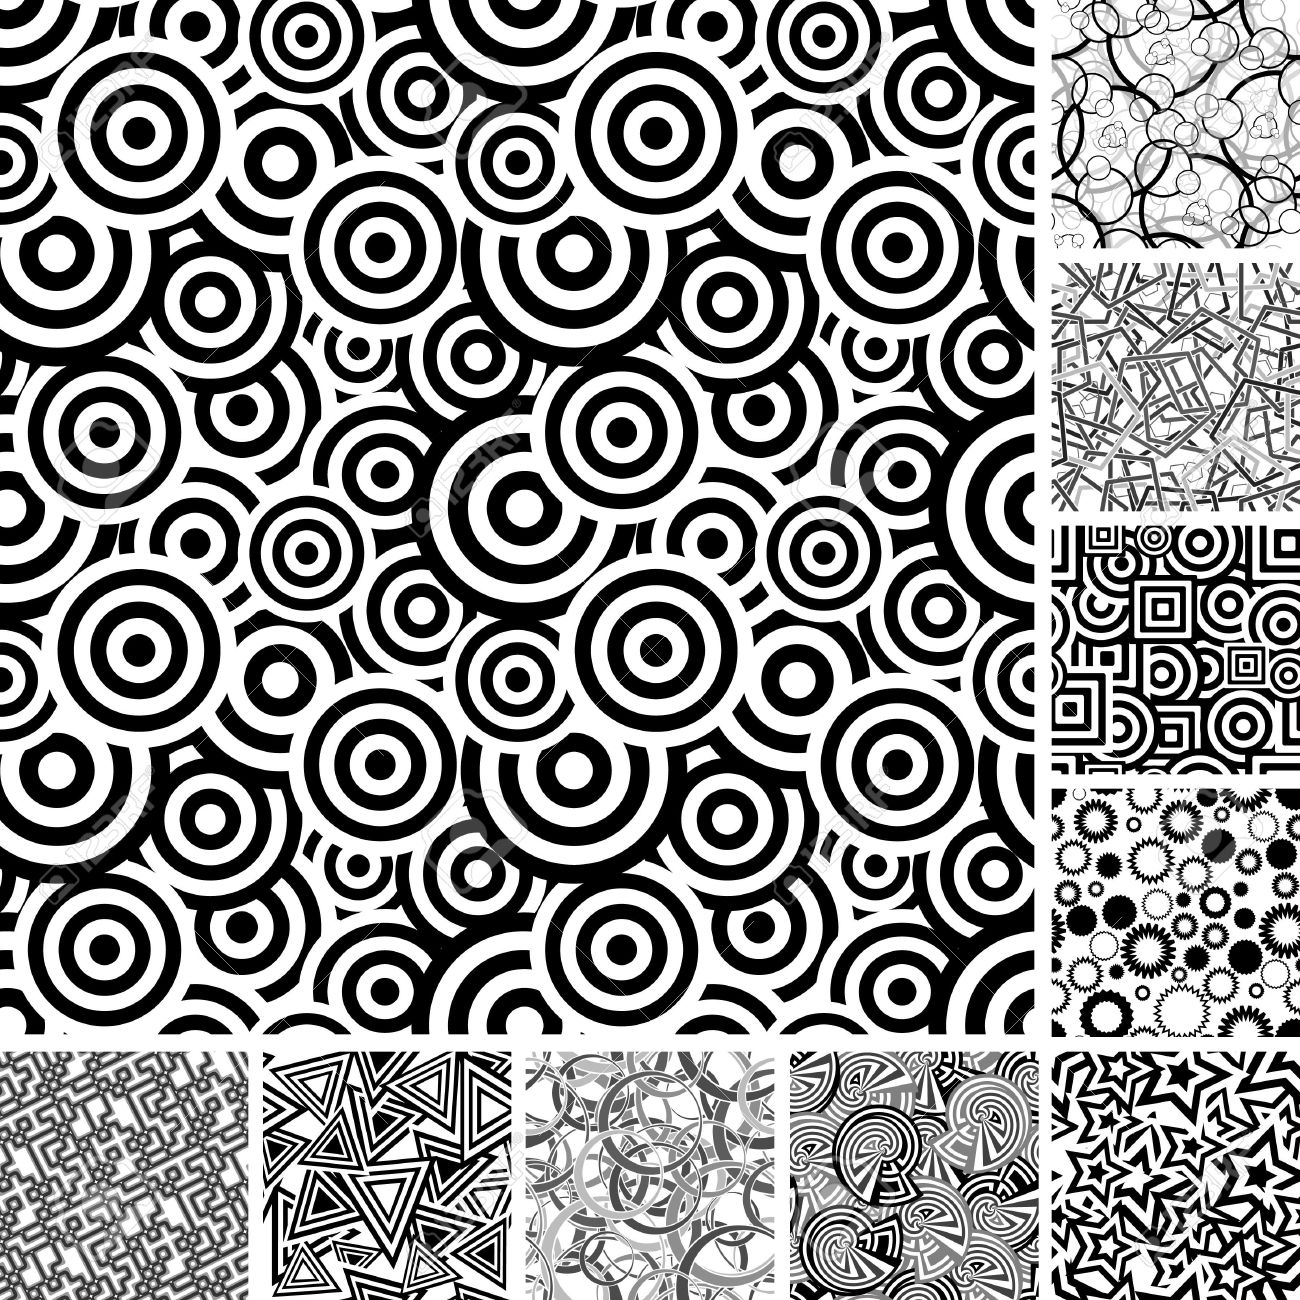 黒と白のレトロな壁紙,パターン,線画,ライン,設計,視覚芸術